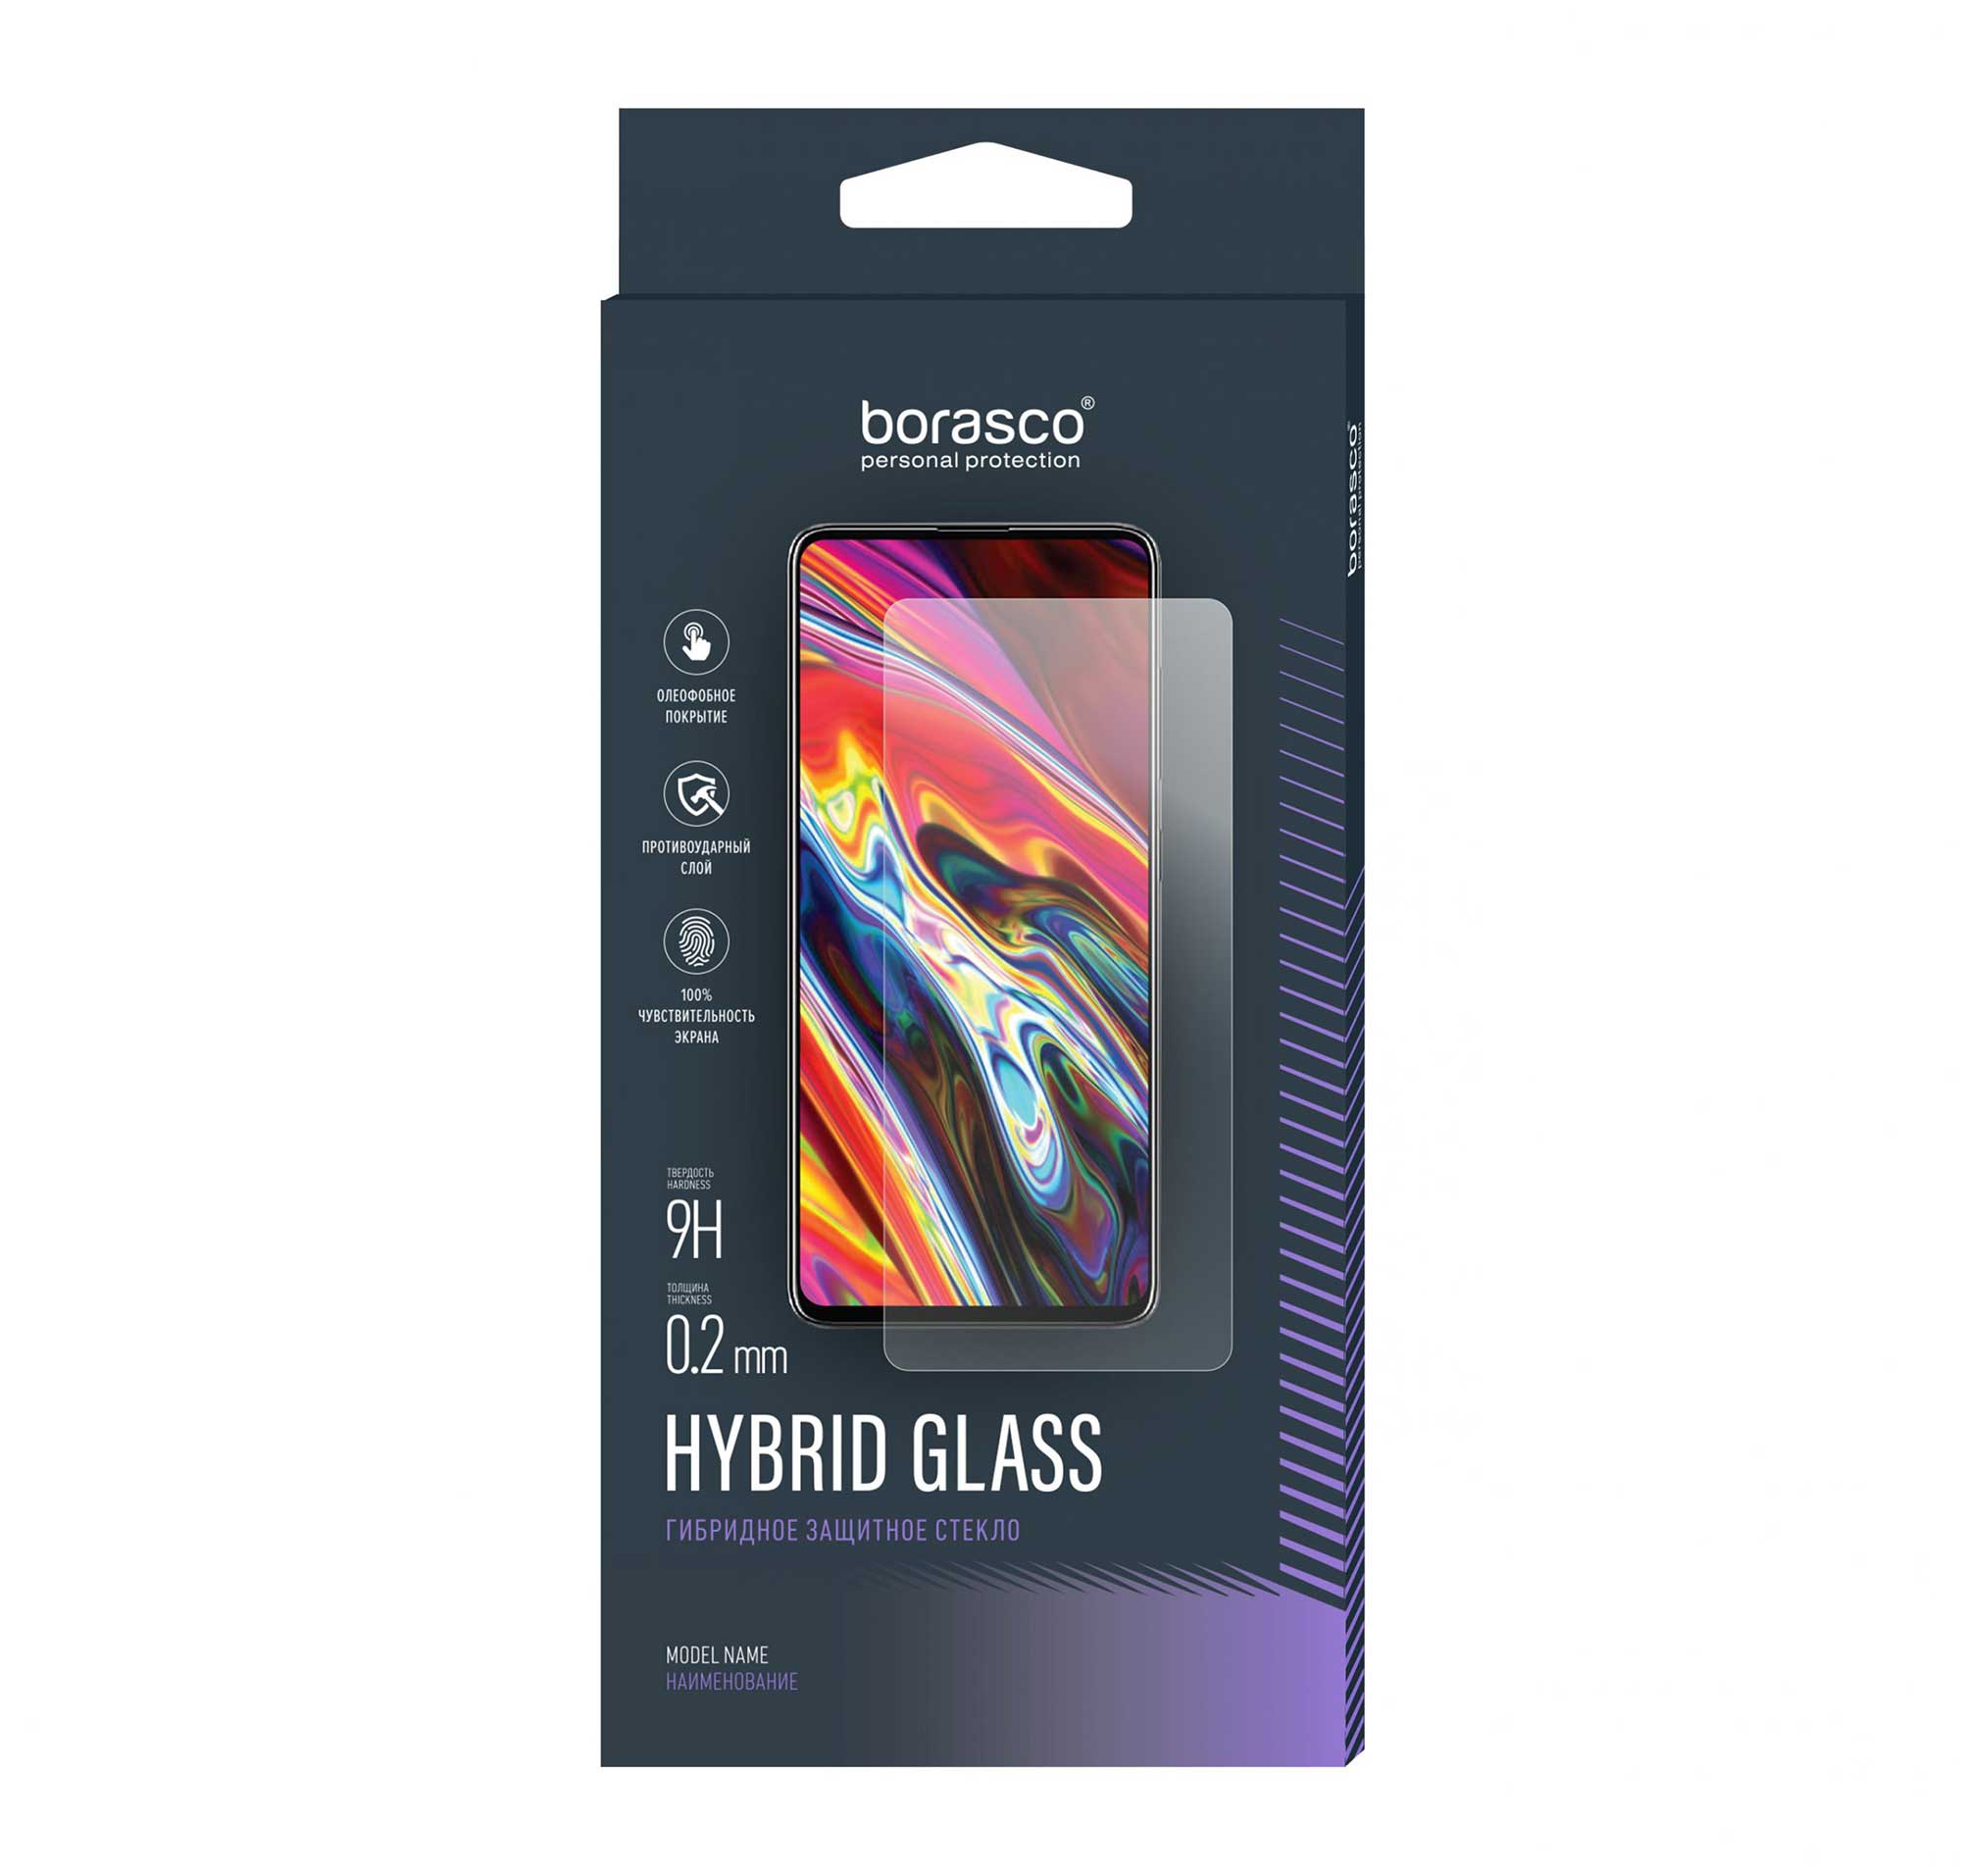 Защитное стекло Hybrid Glass для ZTE Blade A3 2020 силиконовый чехол цветы гжель на zte blade a3 2020 зте блейд а3 2020